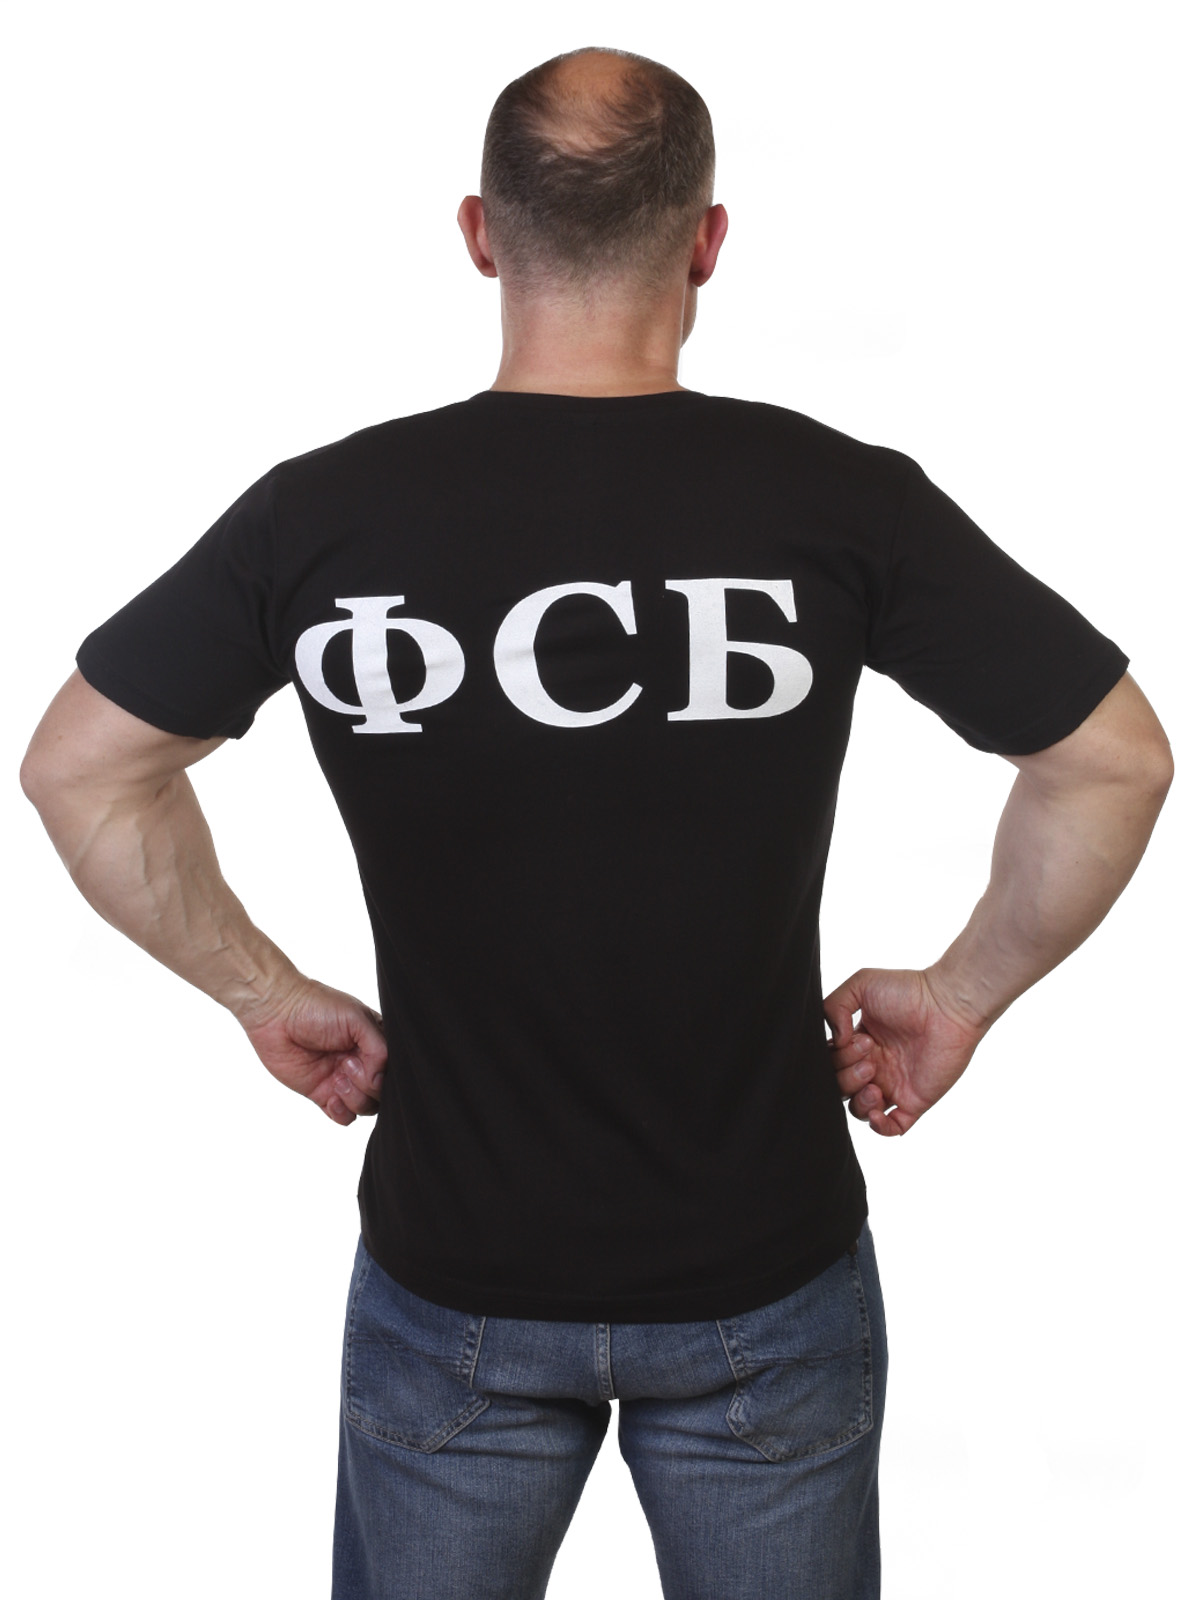 Купить футболку ФСБ с оригинальным принтом в Военторге «Военпро»